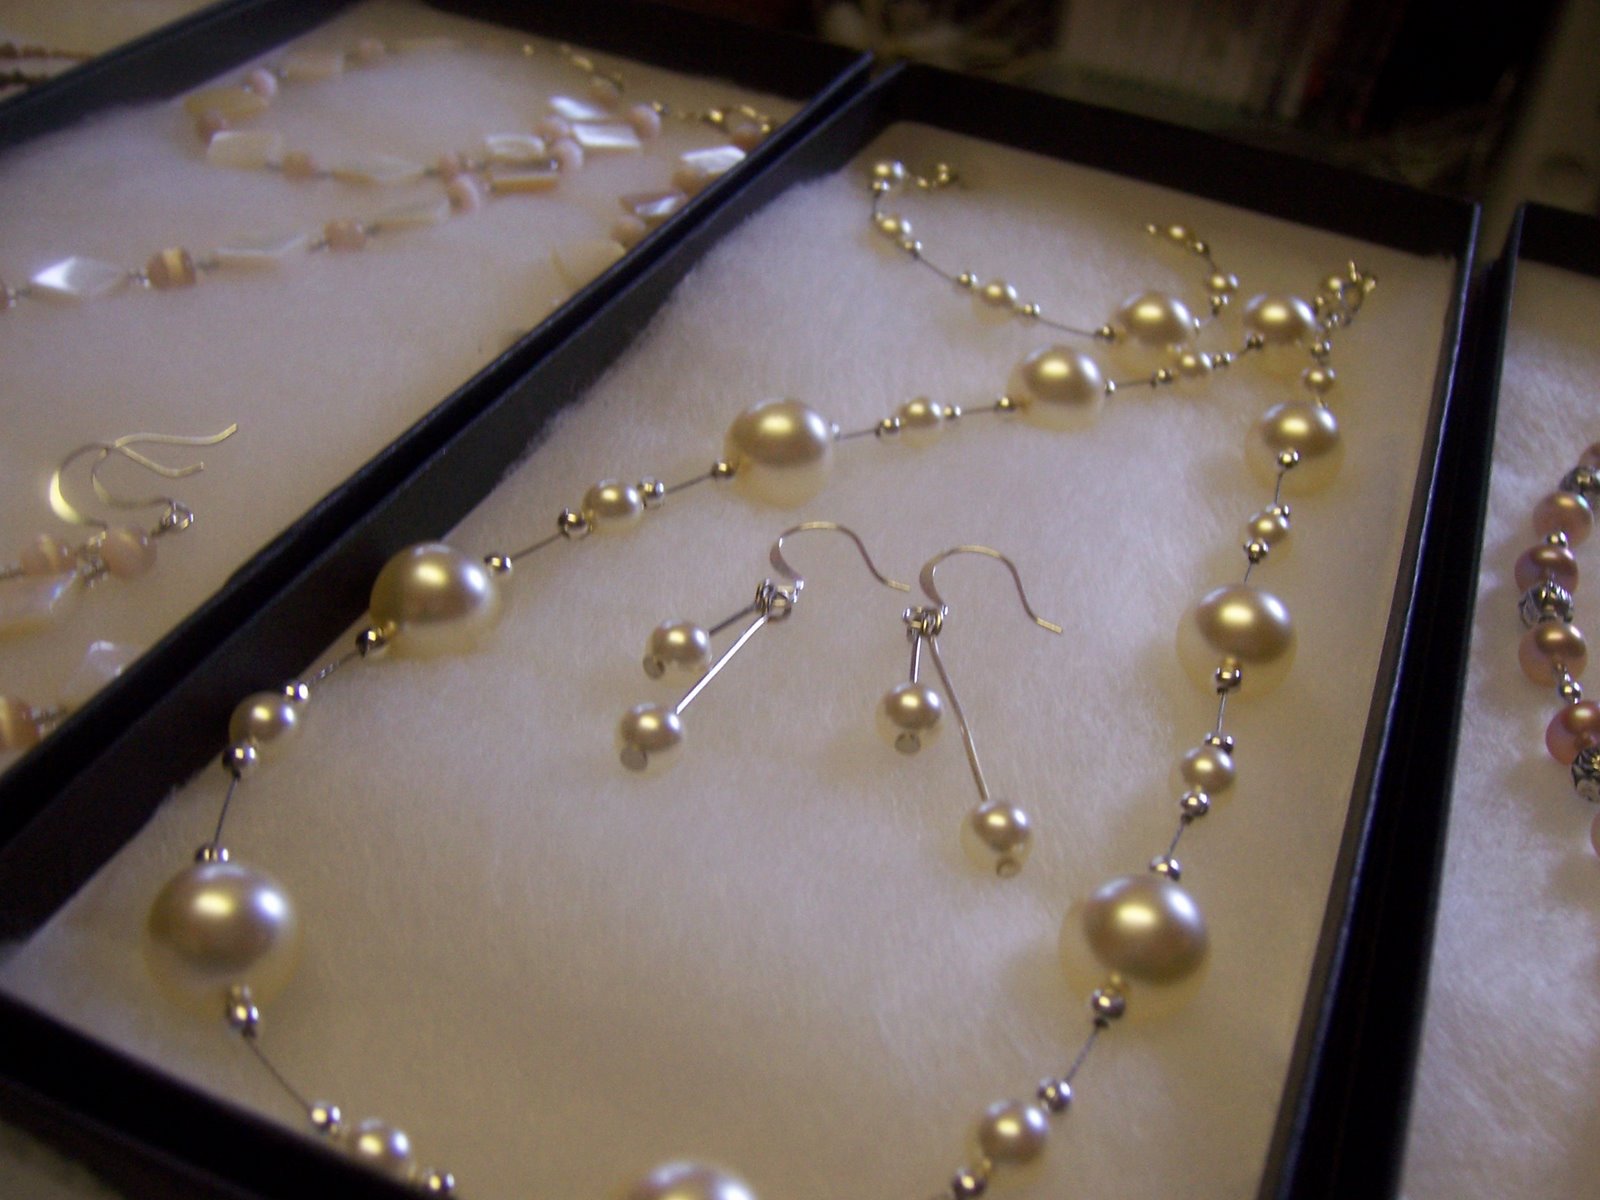 Glass Pearl necklace, earring & bracelet set.